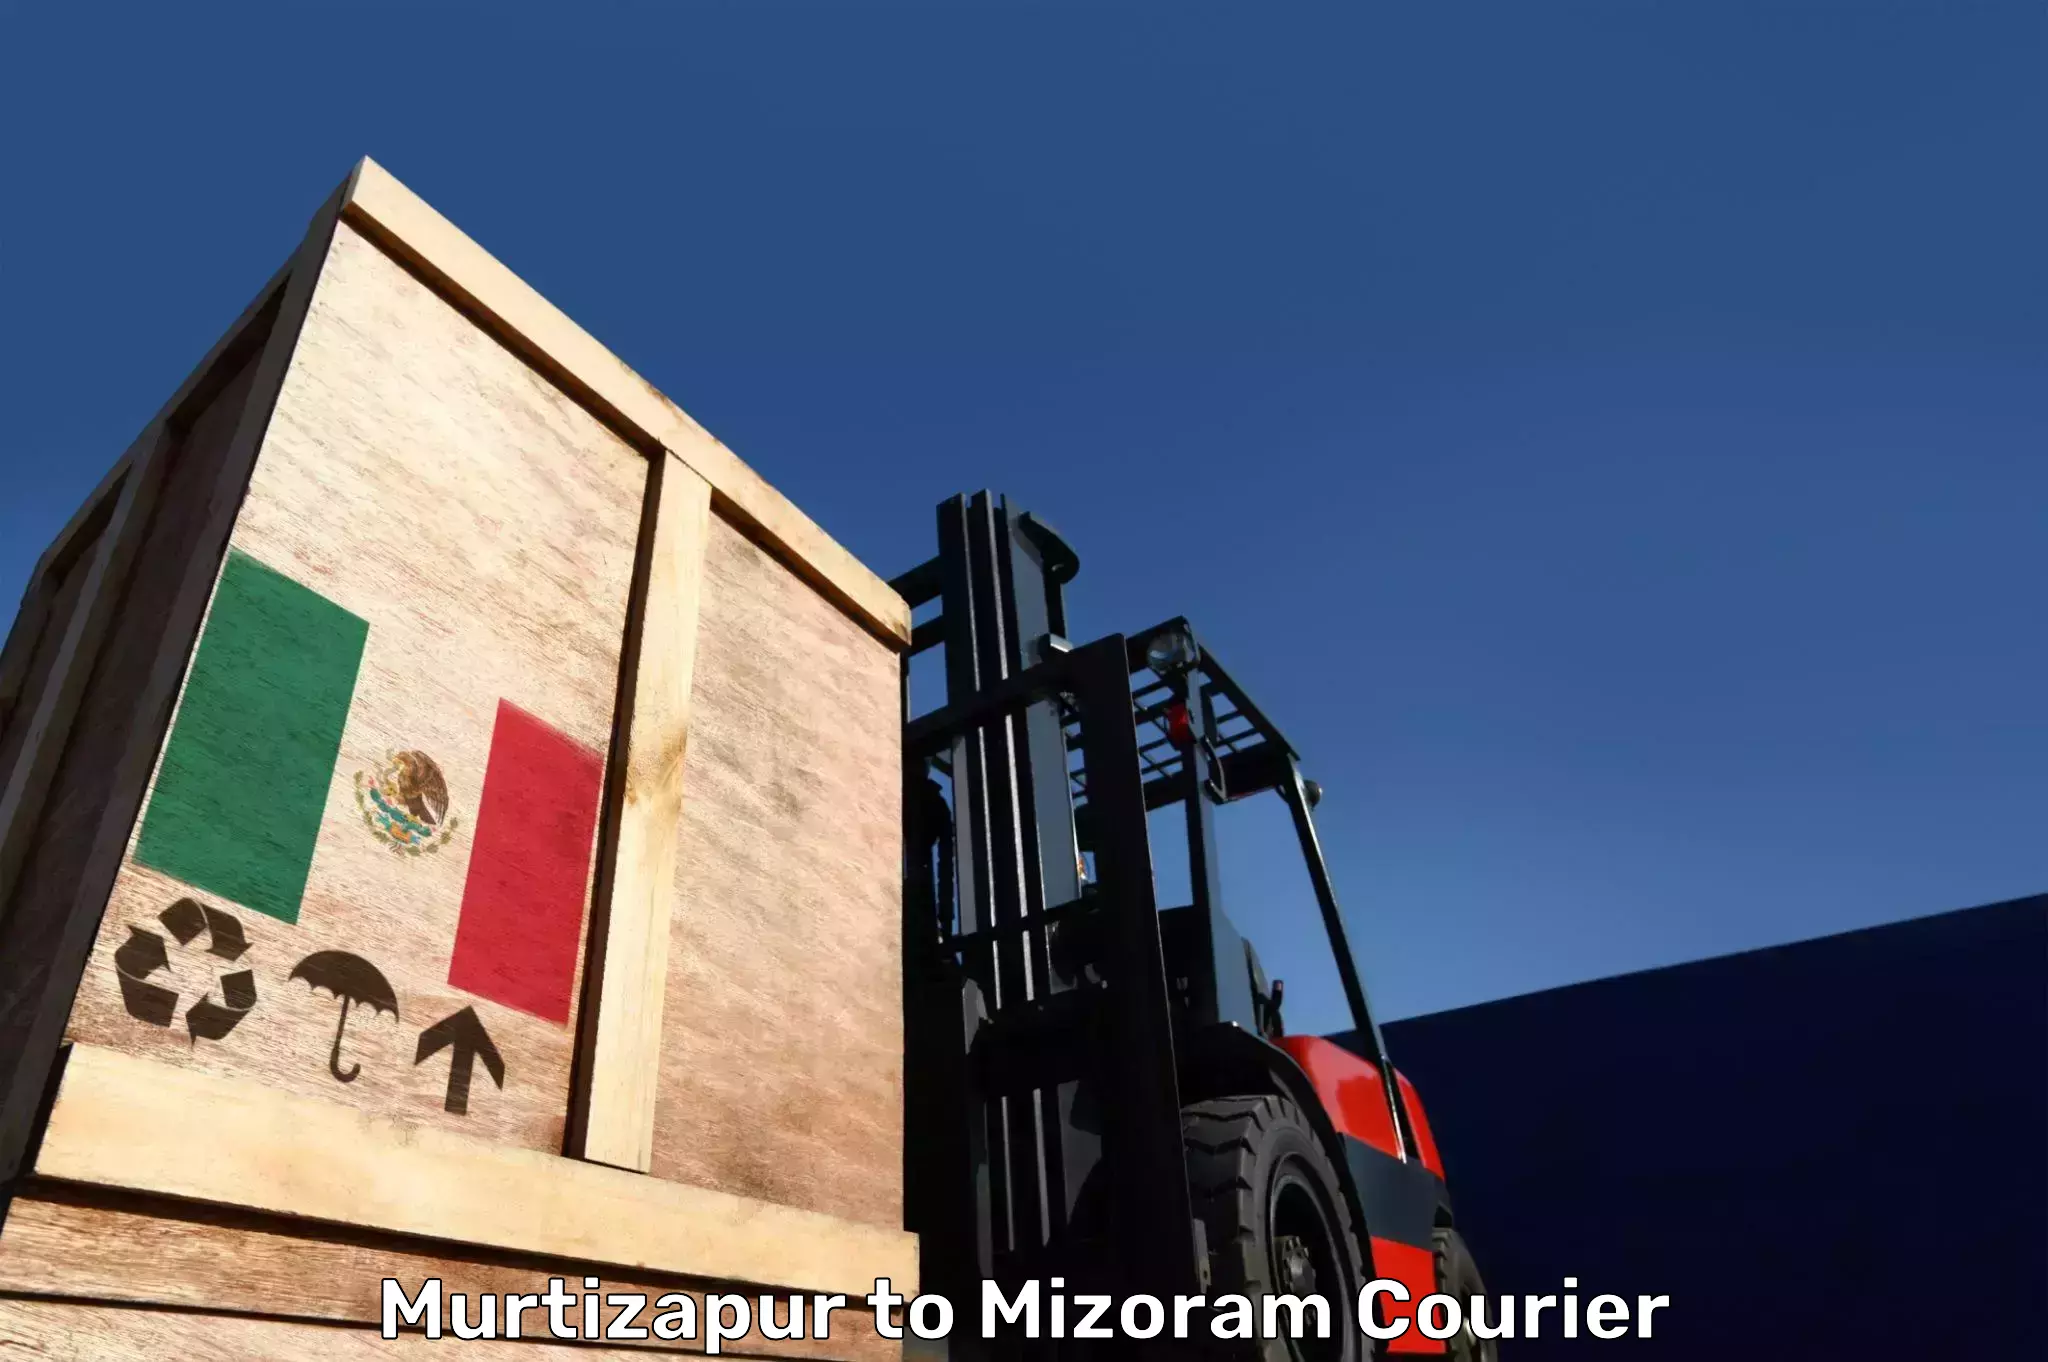 Luggage transport service Murtizapur to Mizoram